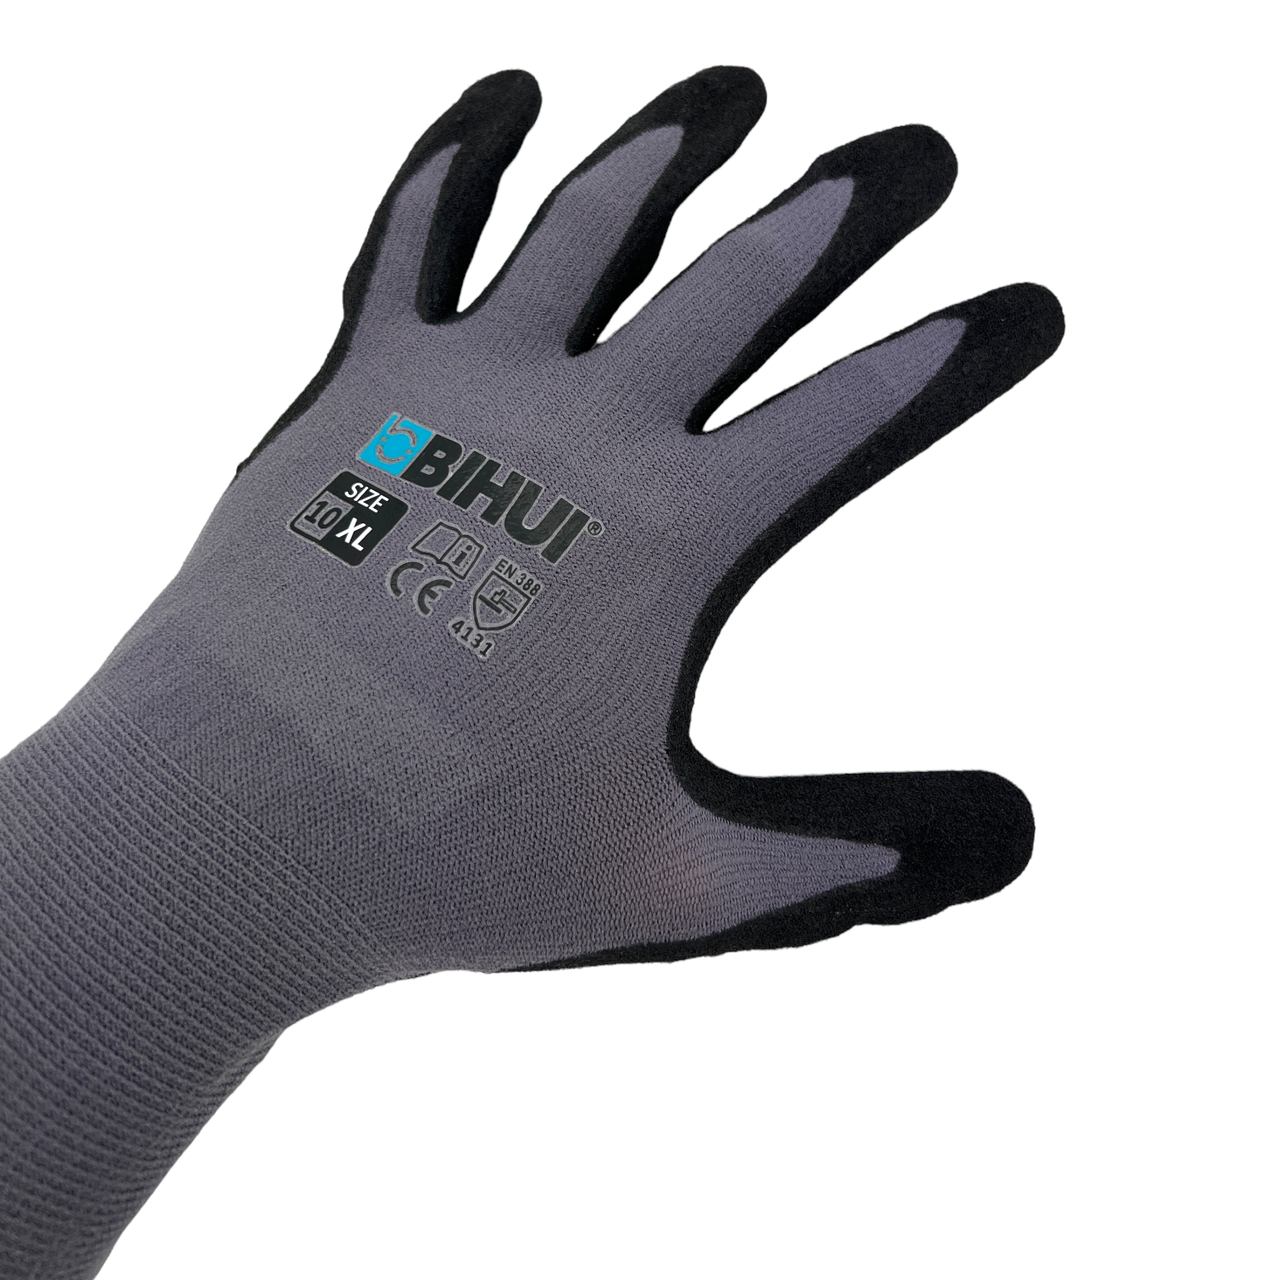 Професійні будівельні рукавички BIHUI розмір XL (10)